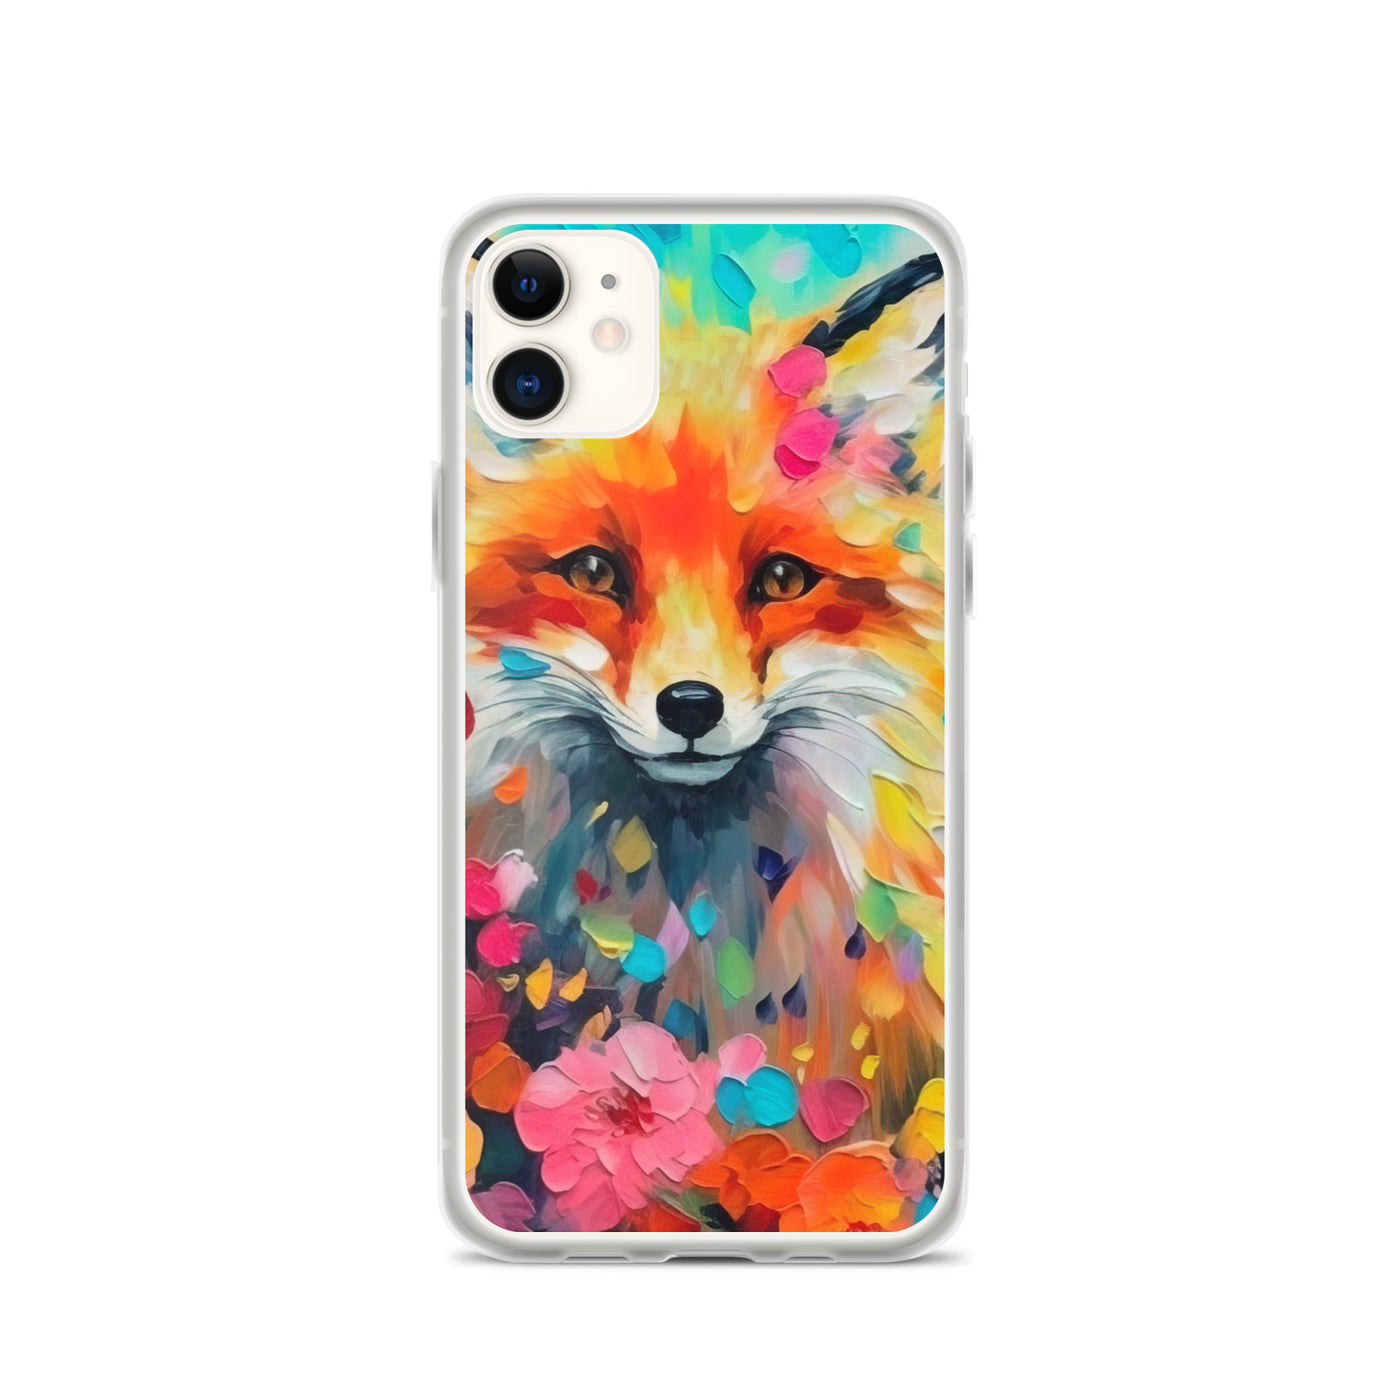 Schöner Fuchs im Blumenfeld - Farbige Malerei - iPhone Schutzhülle (durchsichtig) camping xxx iPhone 11